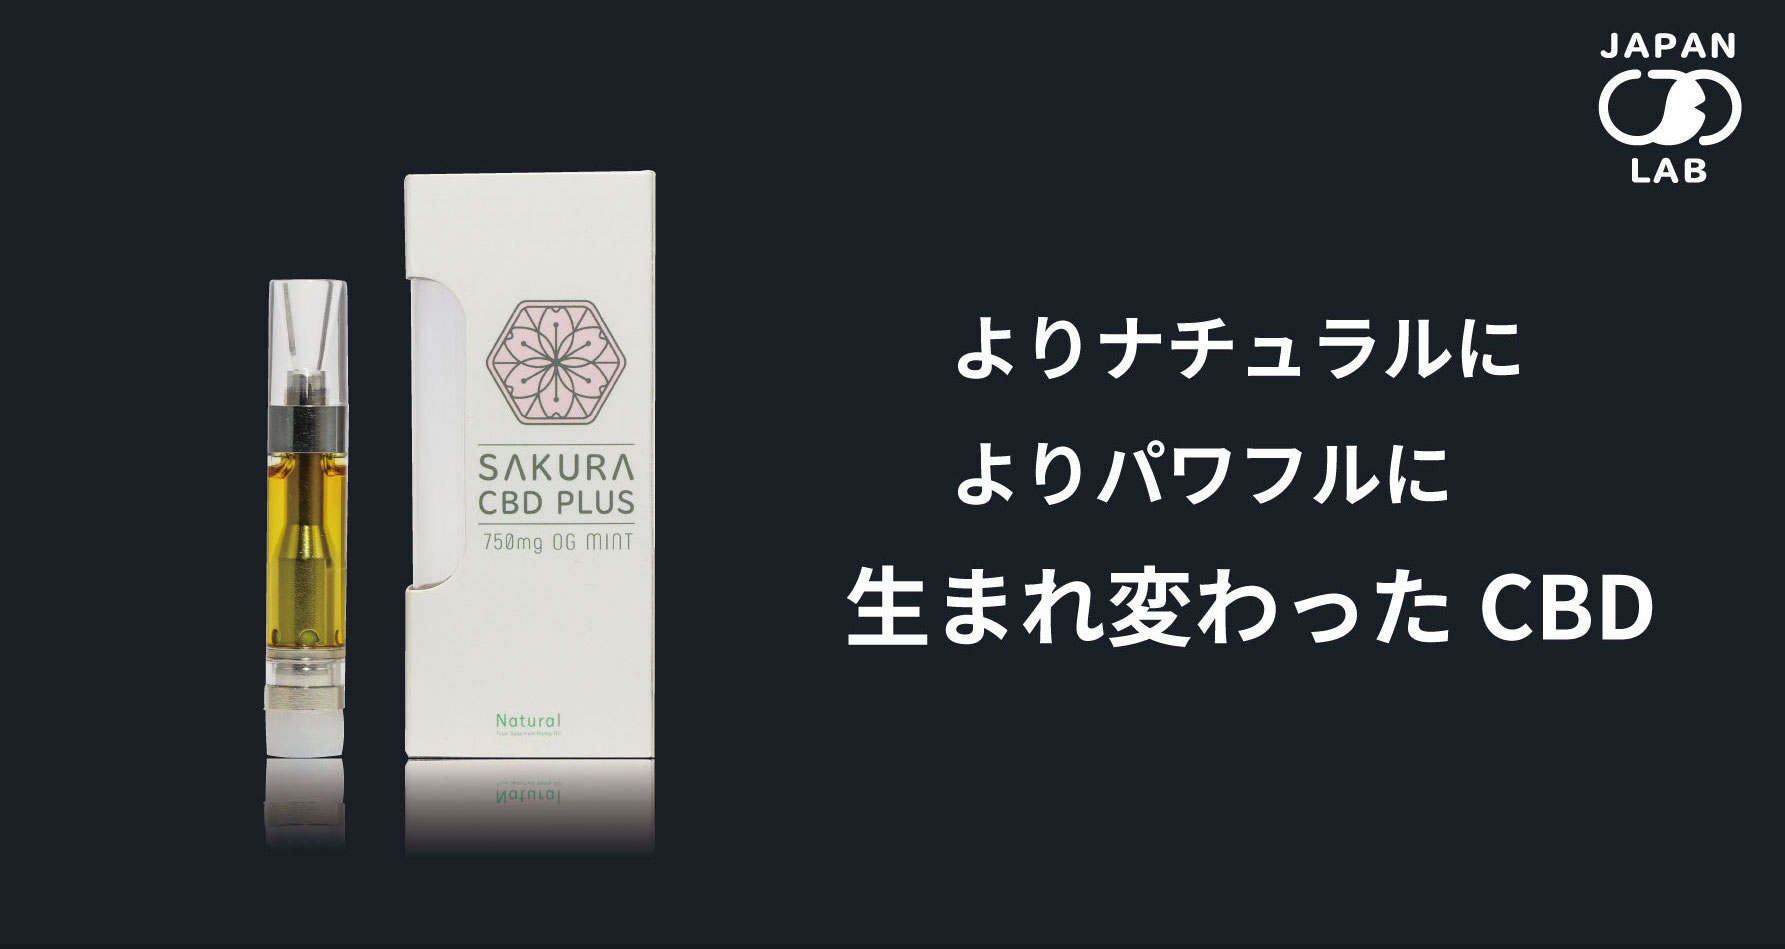 新カートリッジ SAKURA CBD PLUS 12/14日より販売開始！ – Japan CBD Lab